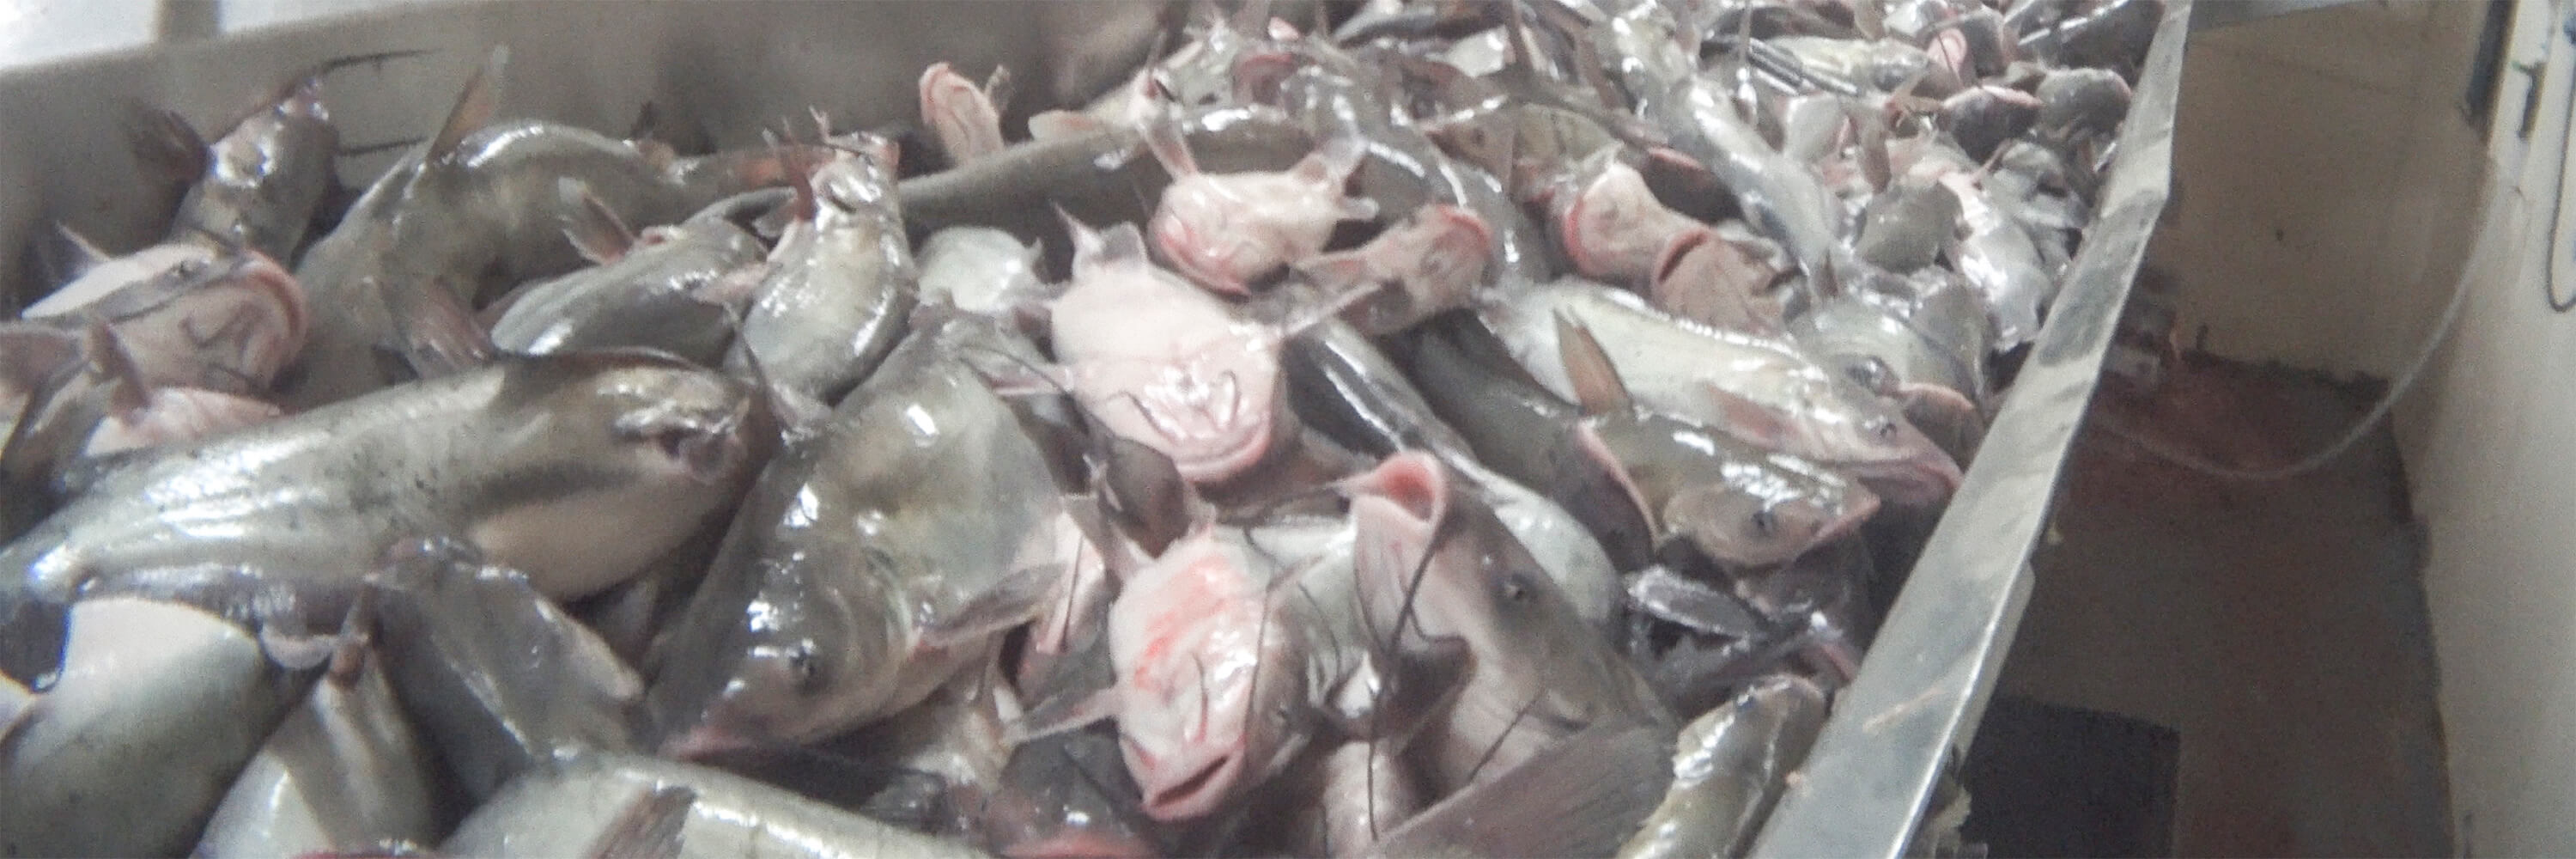 Fish Killed While Conscious at US Catfish Slaughterhouse